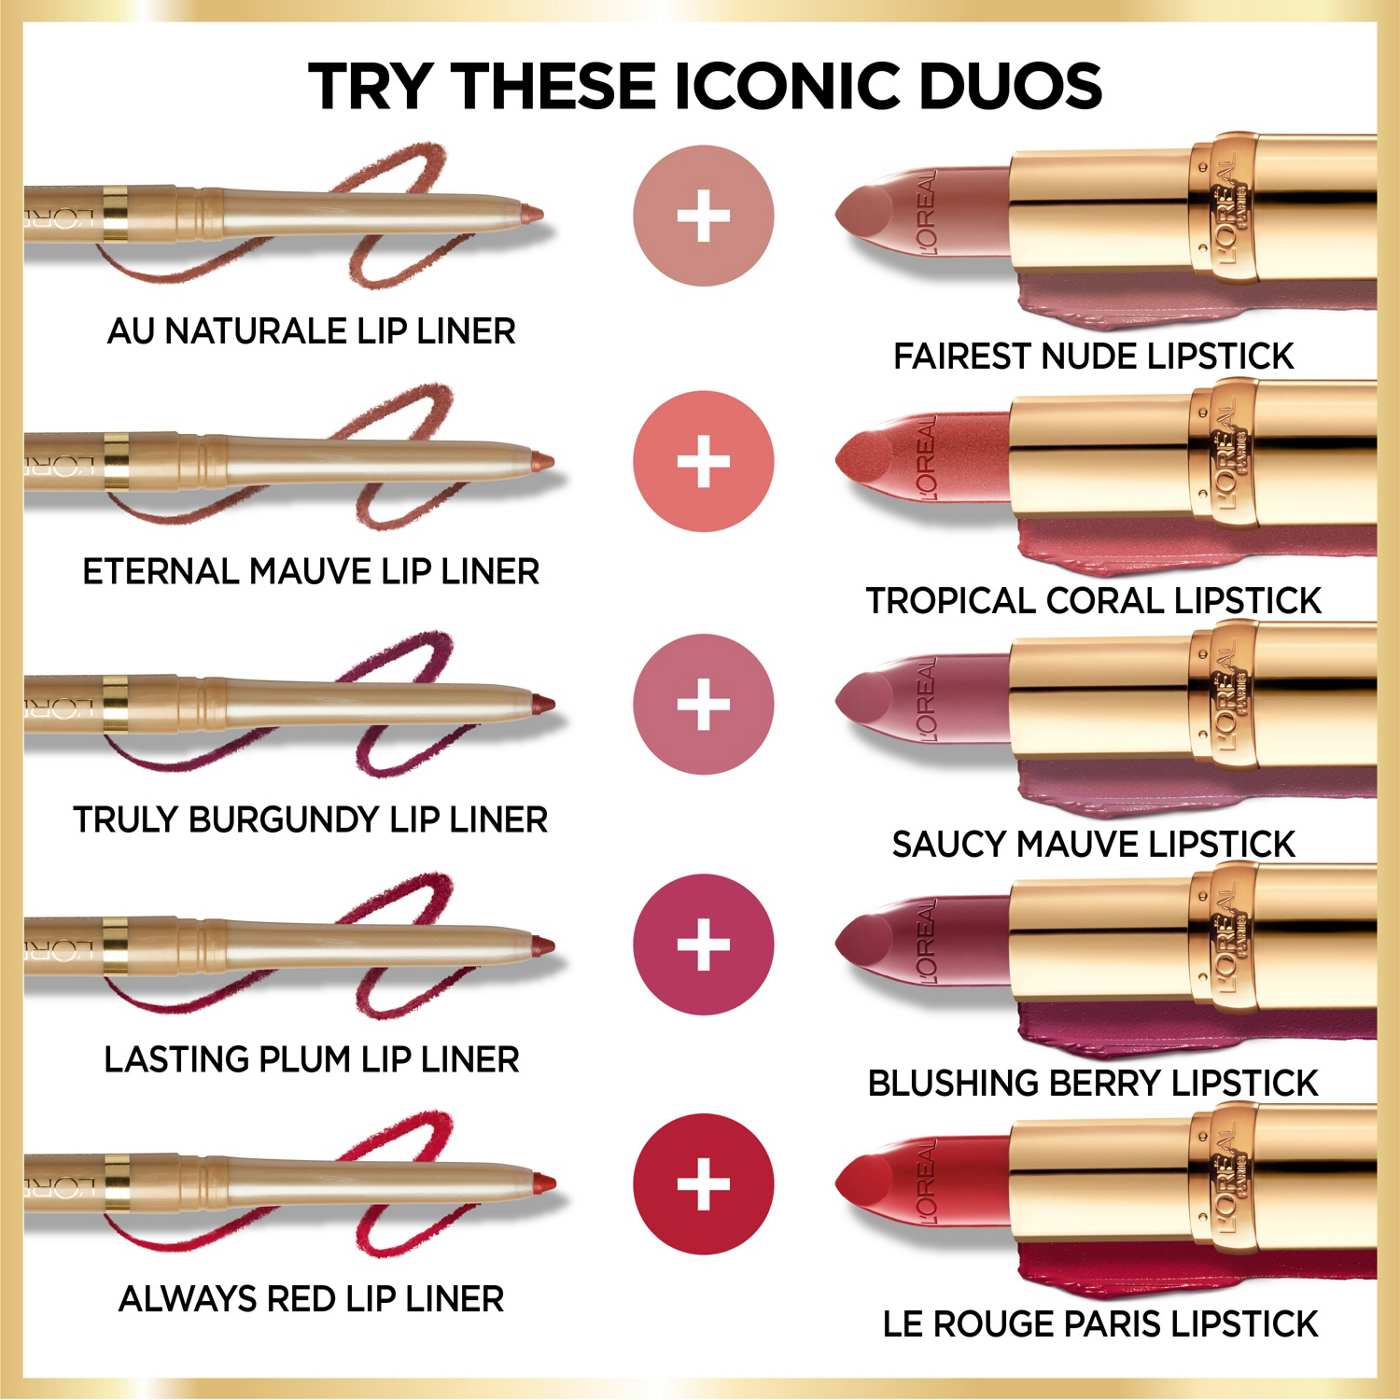 L'Oréal Paris Colour Riche Original Satin Lipstick - Saucy Mauve; image 3 of 5